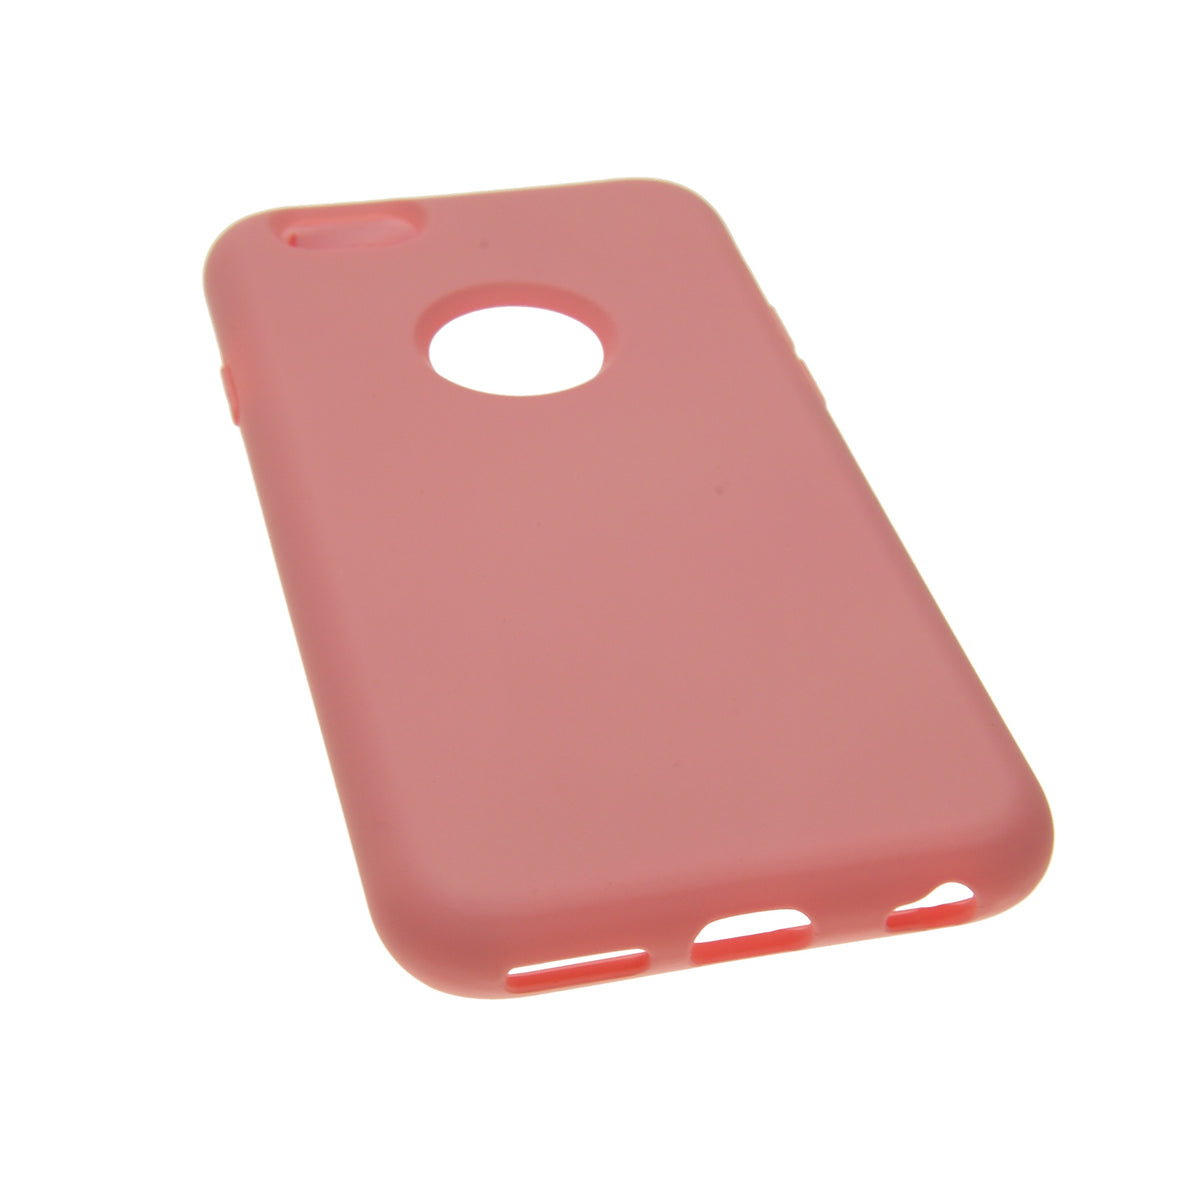 Estuche EL REY silicon rosado iphone 6 plus